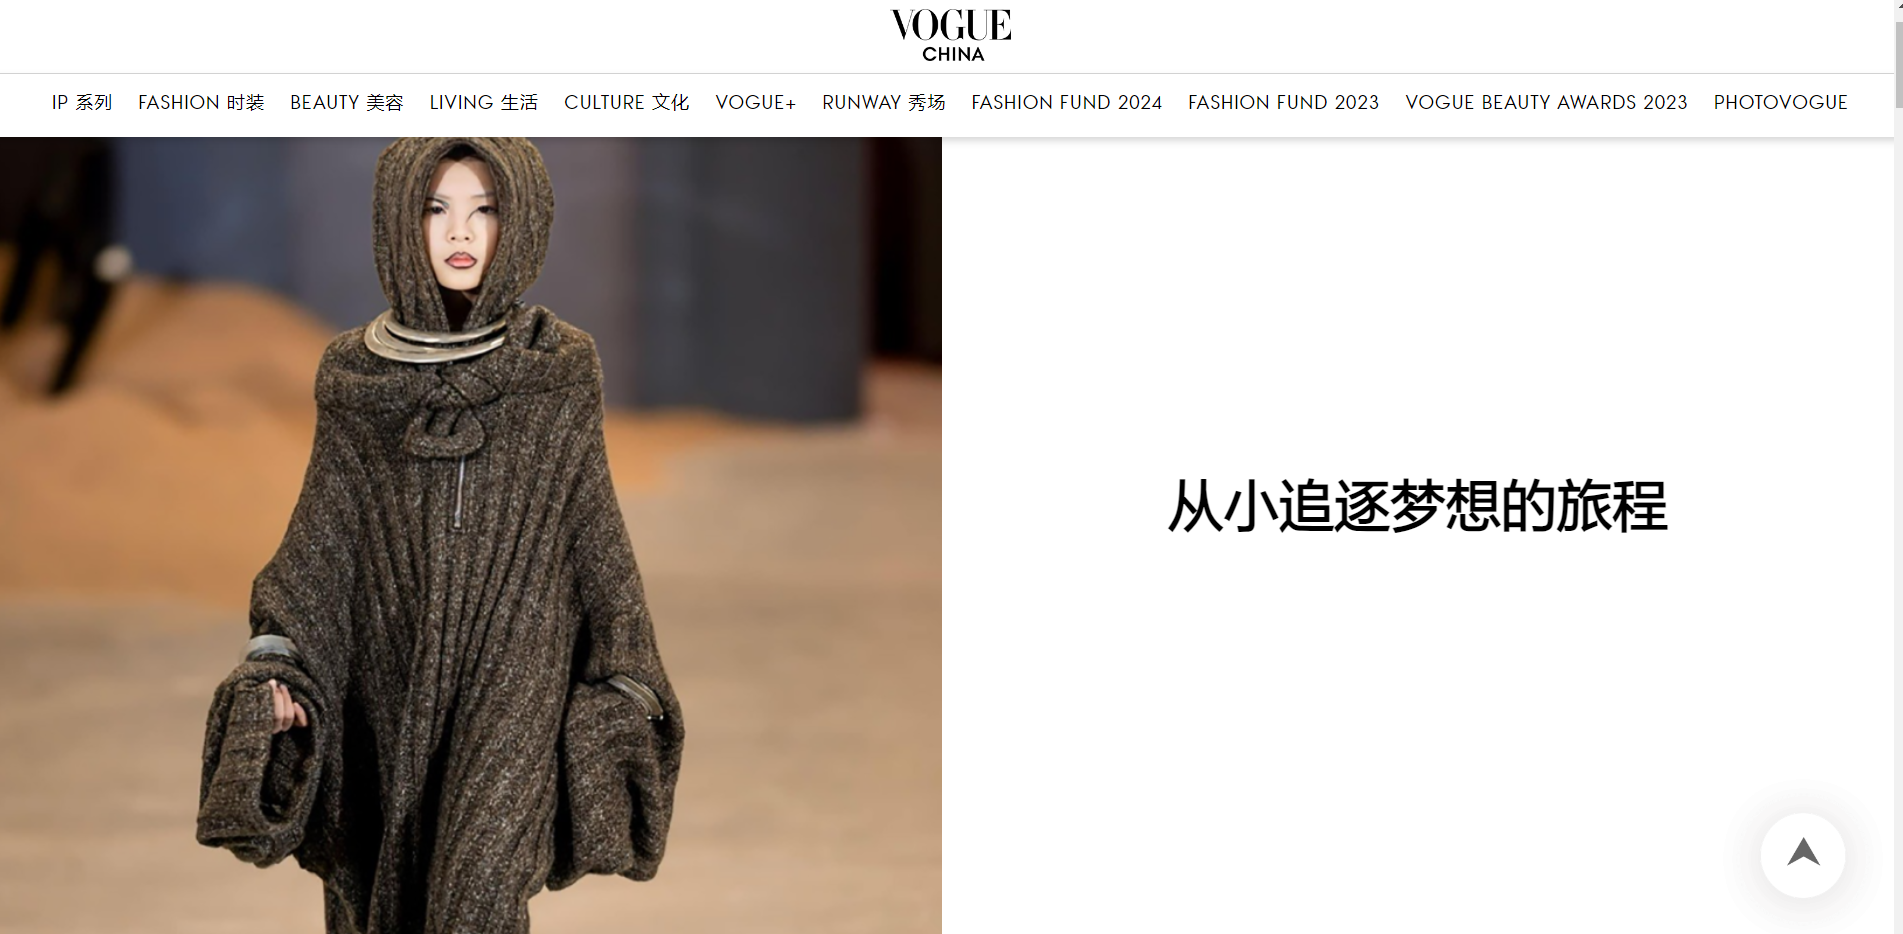 Mẫu nhí Việt 10 tuổi lần đầu đi diễn quốc tế đã lên ngay Vogue Trung Quốc, thần thái không đùa được - Ảnh 1.